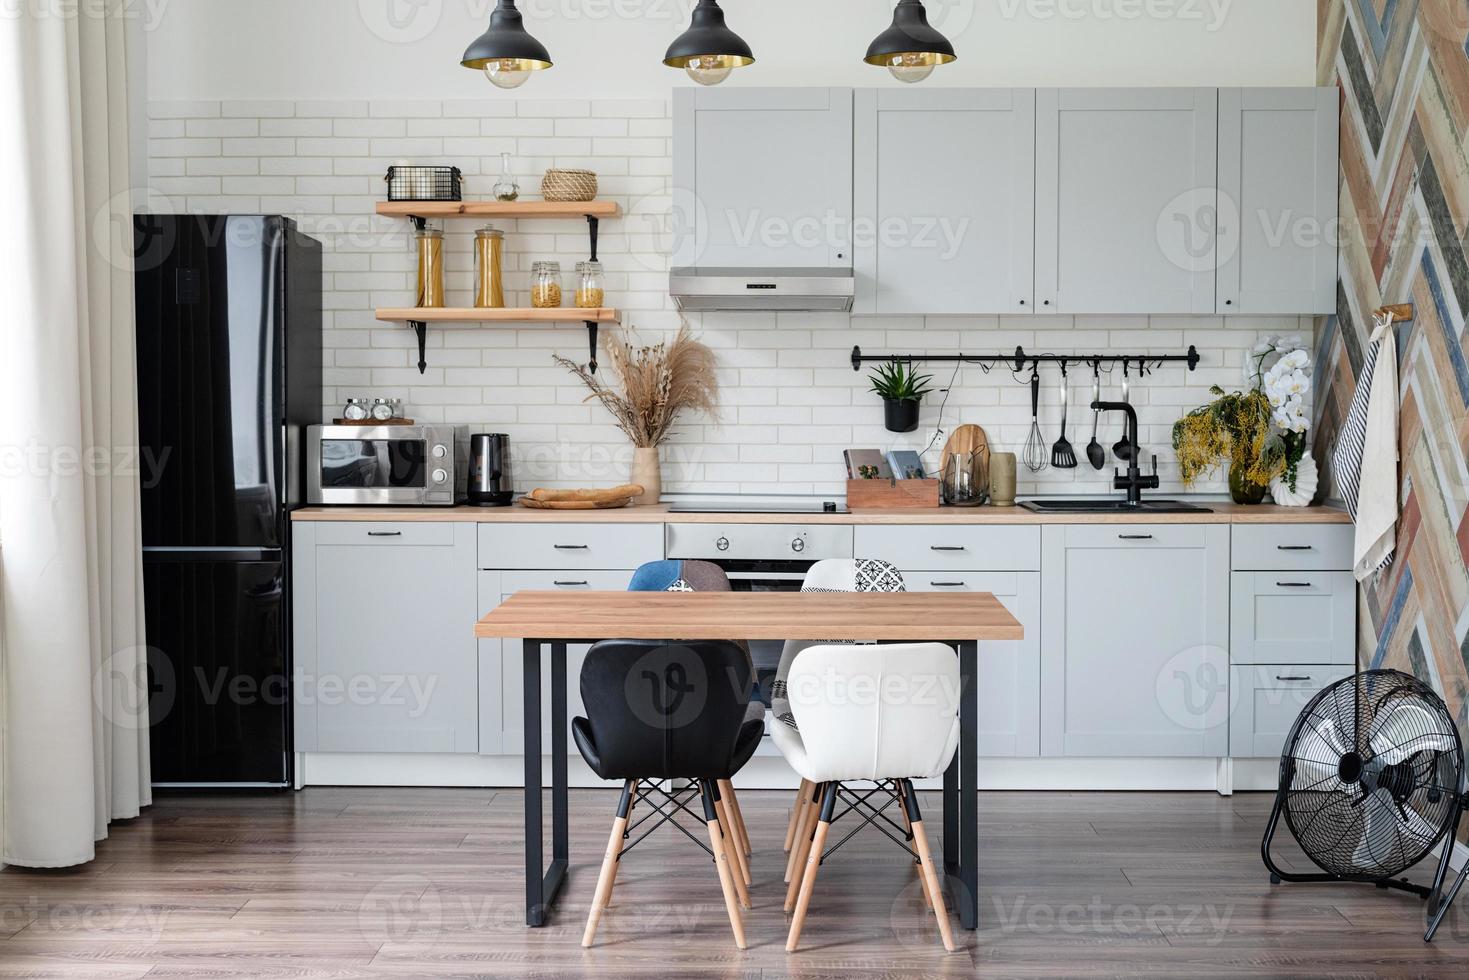 interiör av kök i rustik stil med vintage köksartiklar och trävägg. vita möbler och trädekor i ljus stuga inomhus. foto